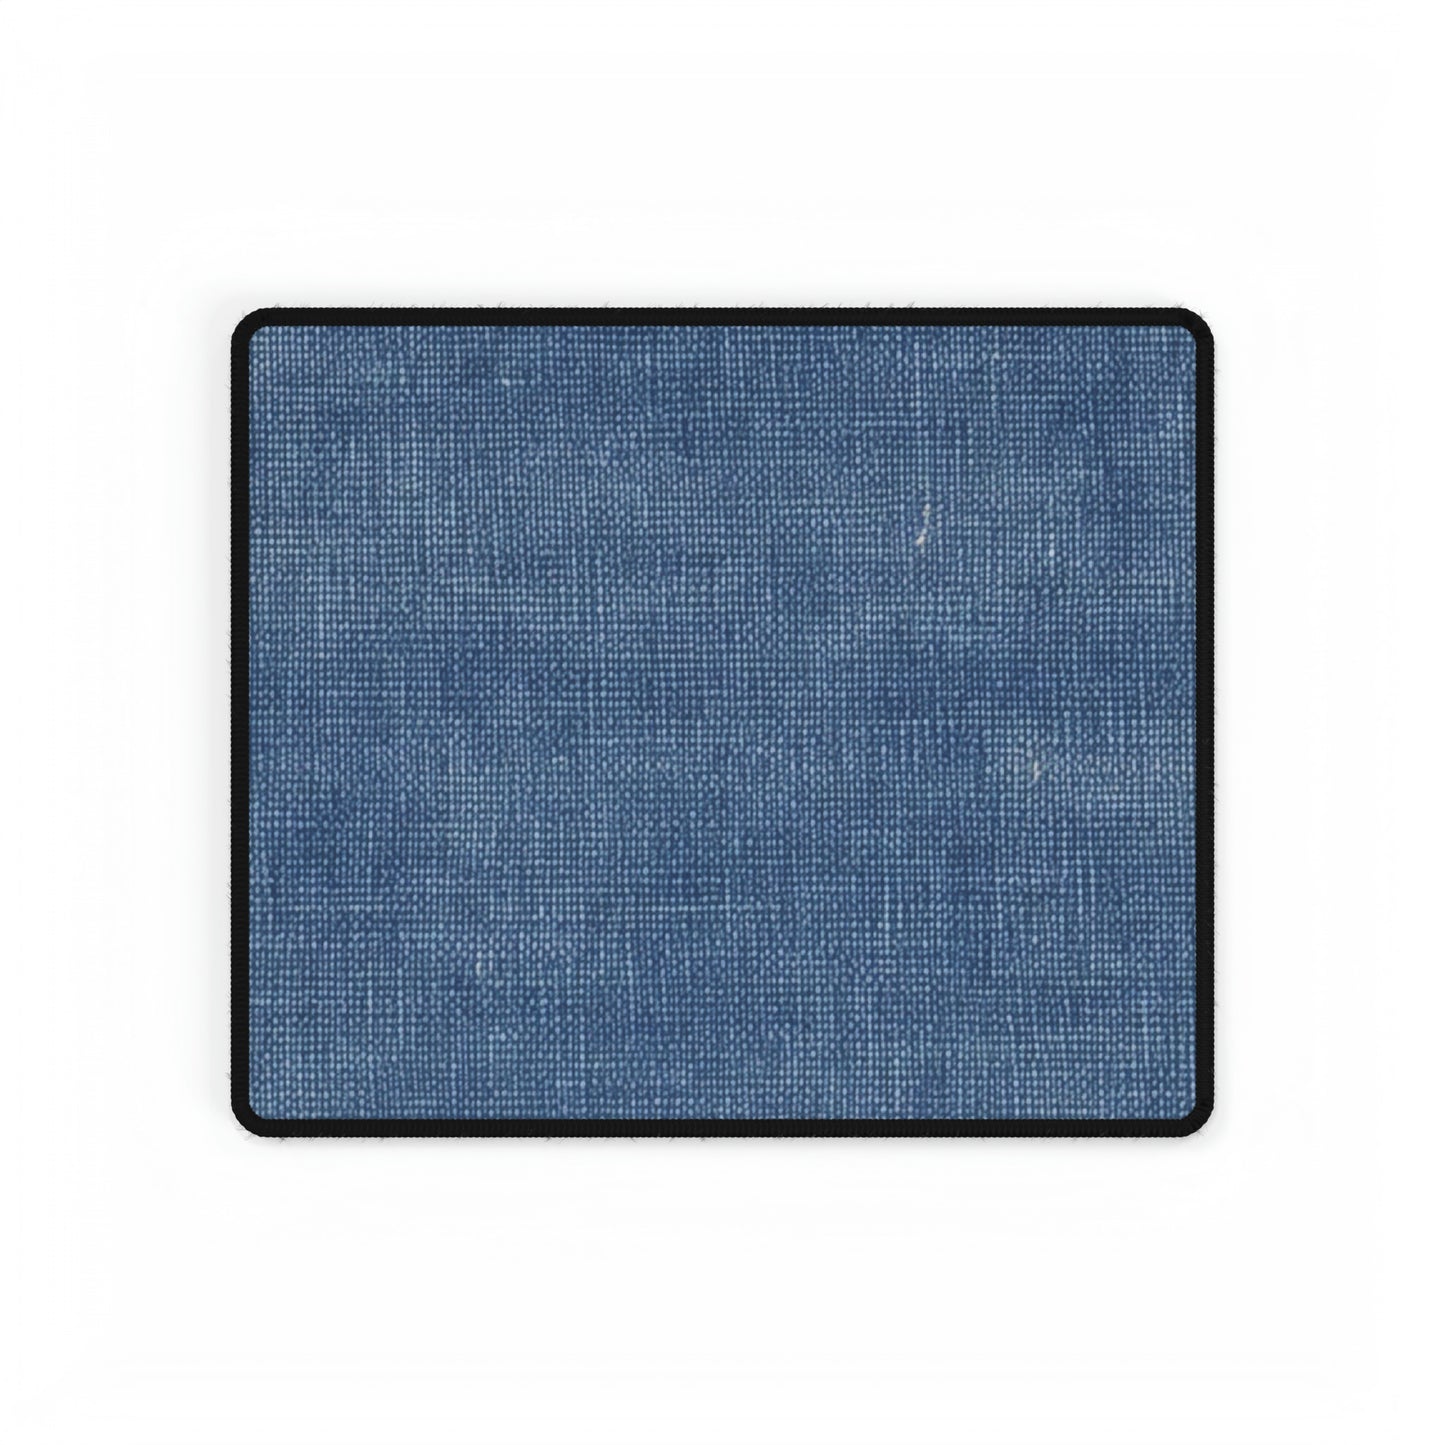 Blue faux Denim Design - Desk Mats